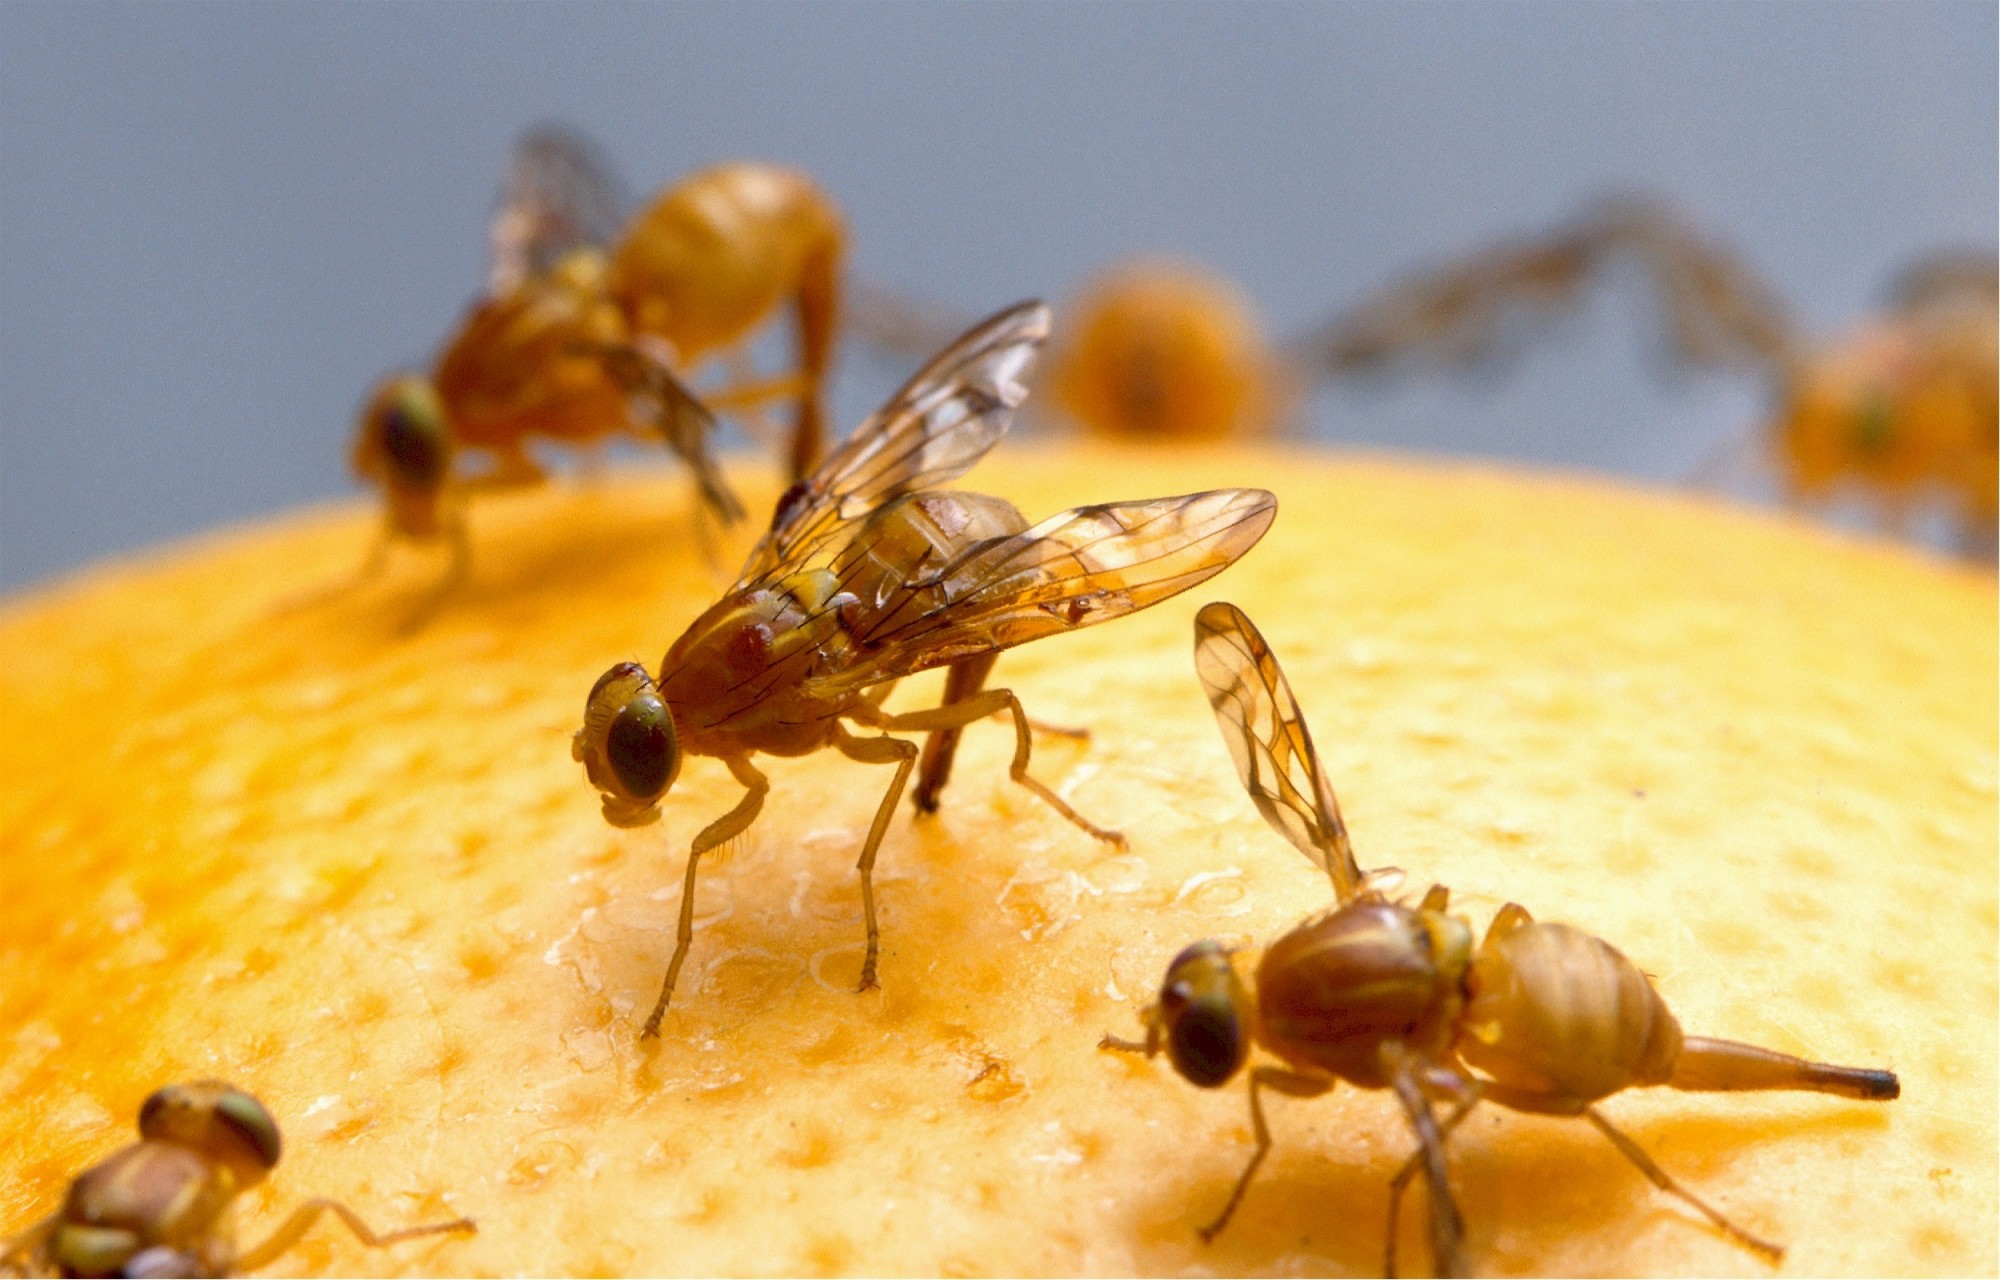 How to Prevent Fruit Flies